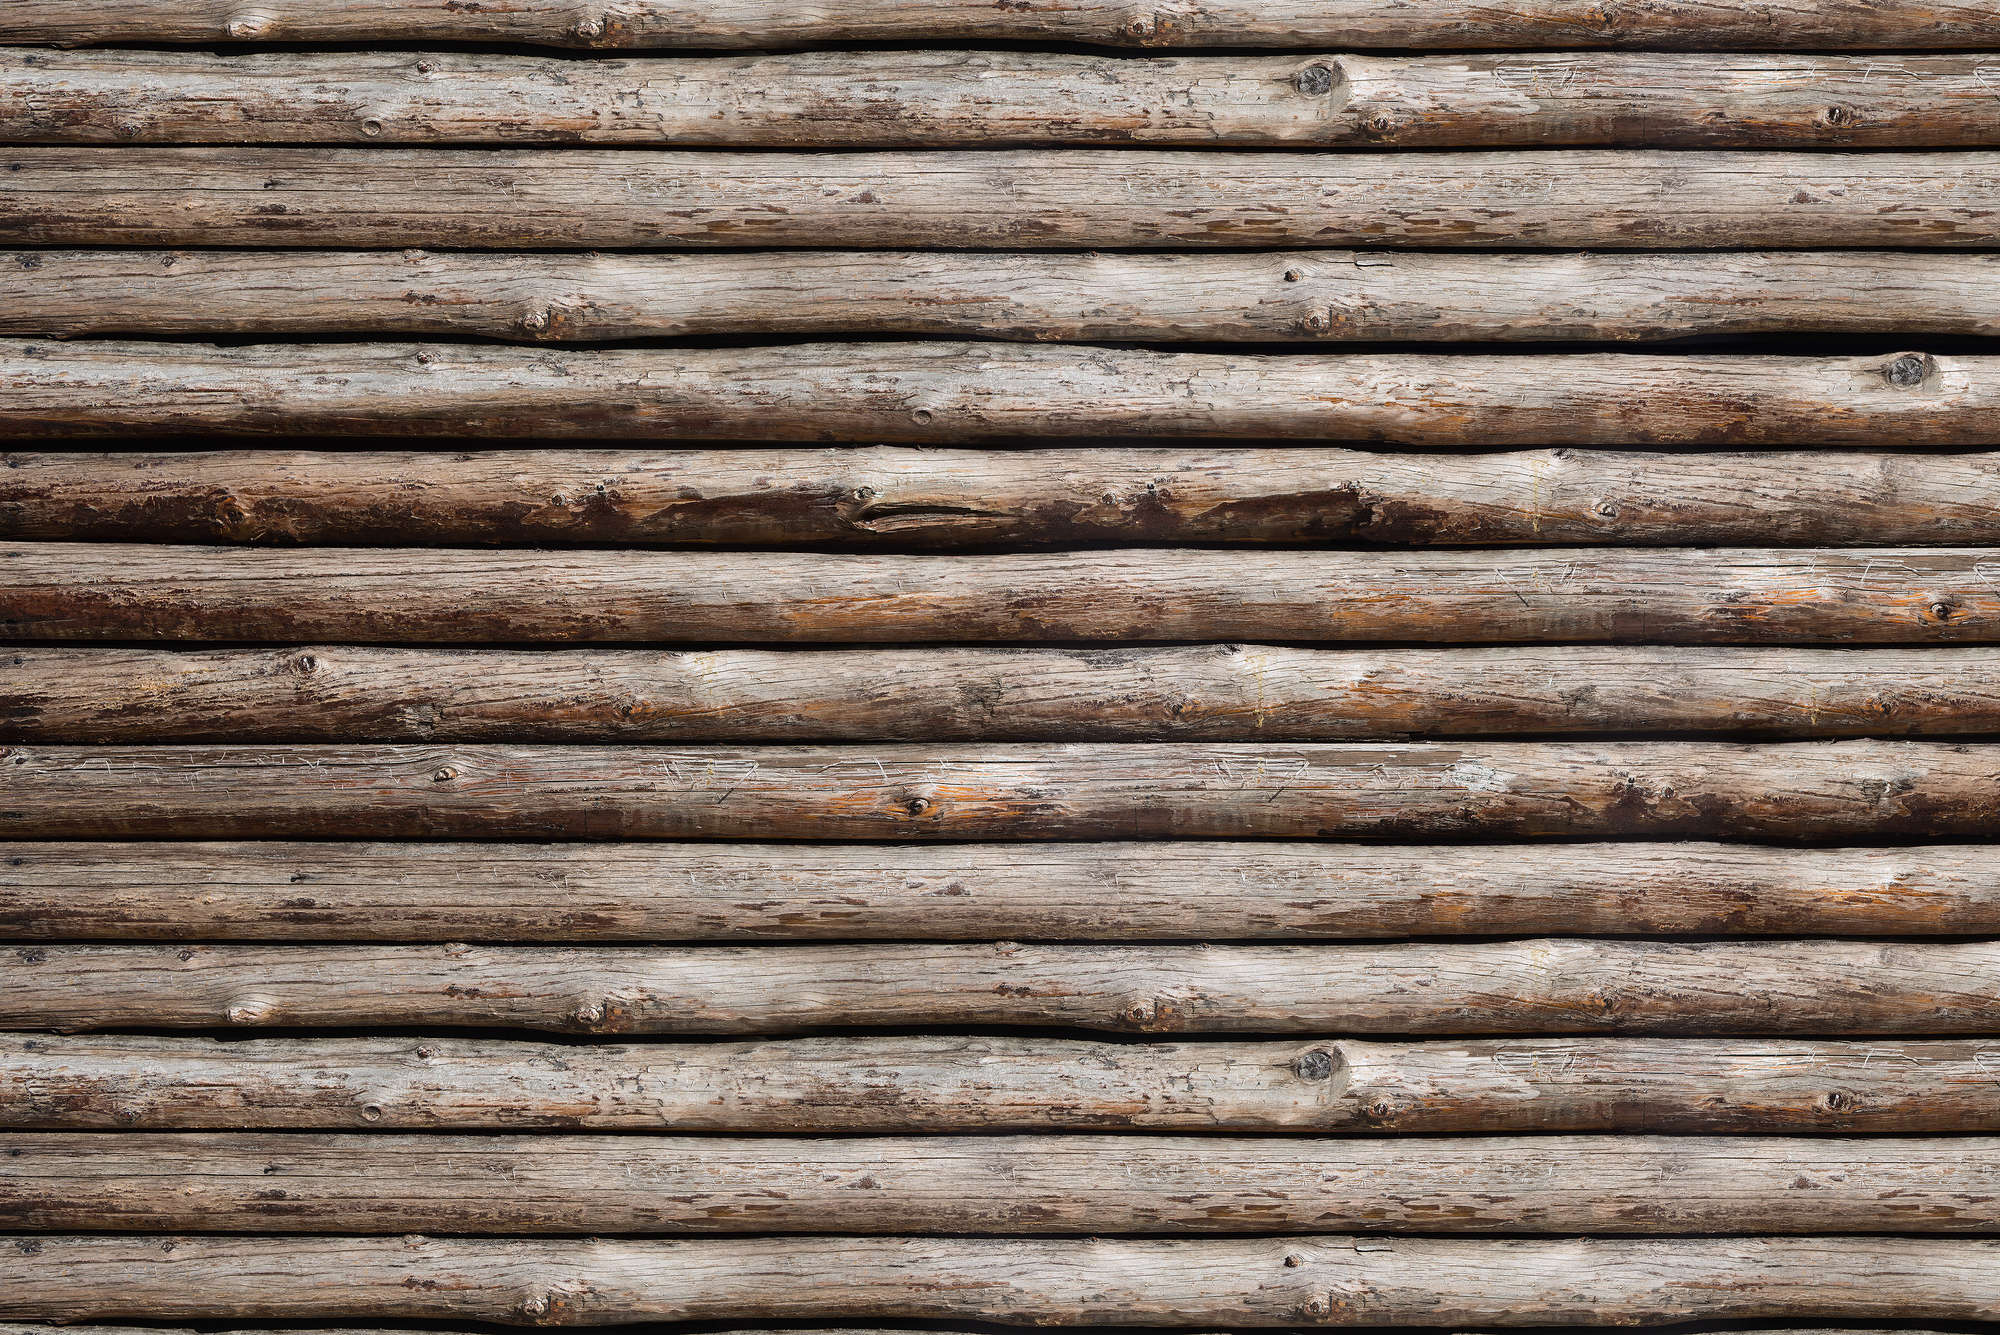             Fotomurali in legno su parete di casetta di legno su pile testurizzato
        